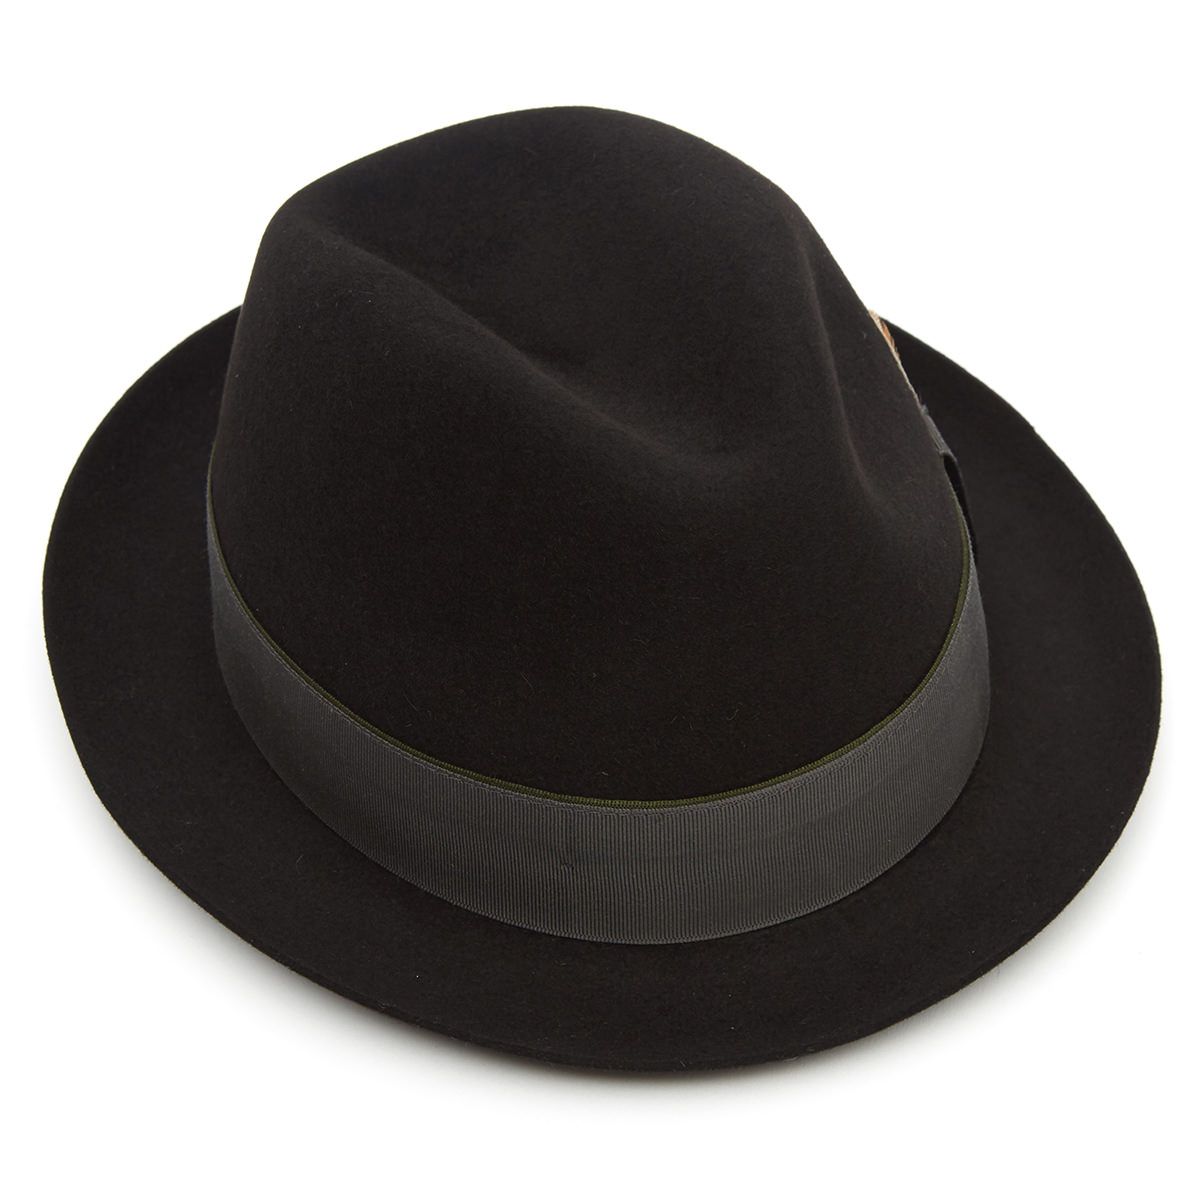 Finchley Fur Felt Trilby Hat